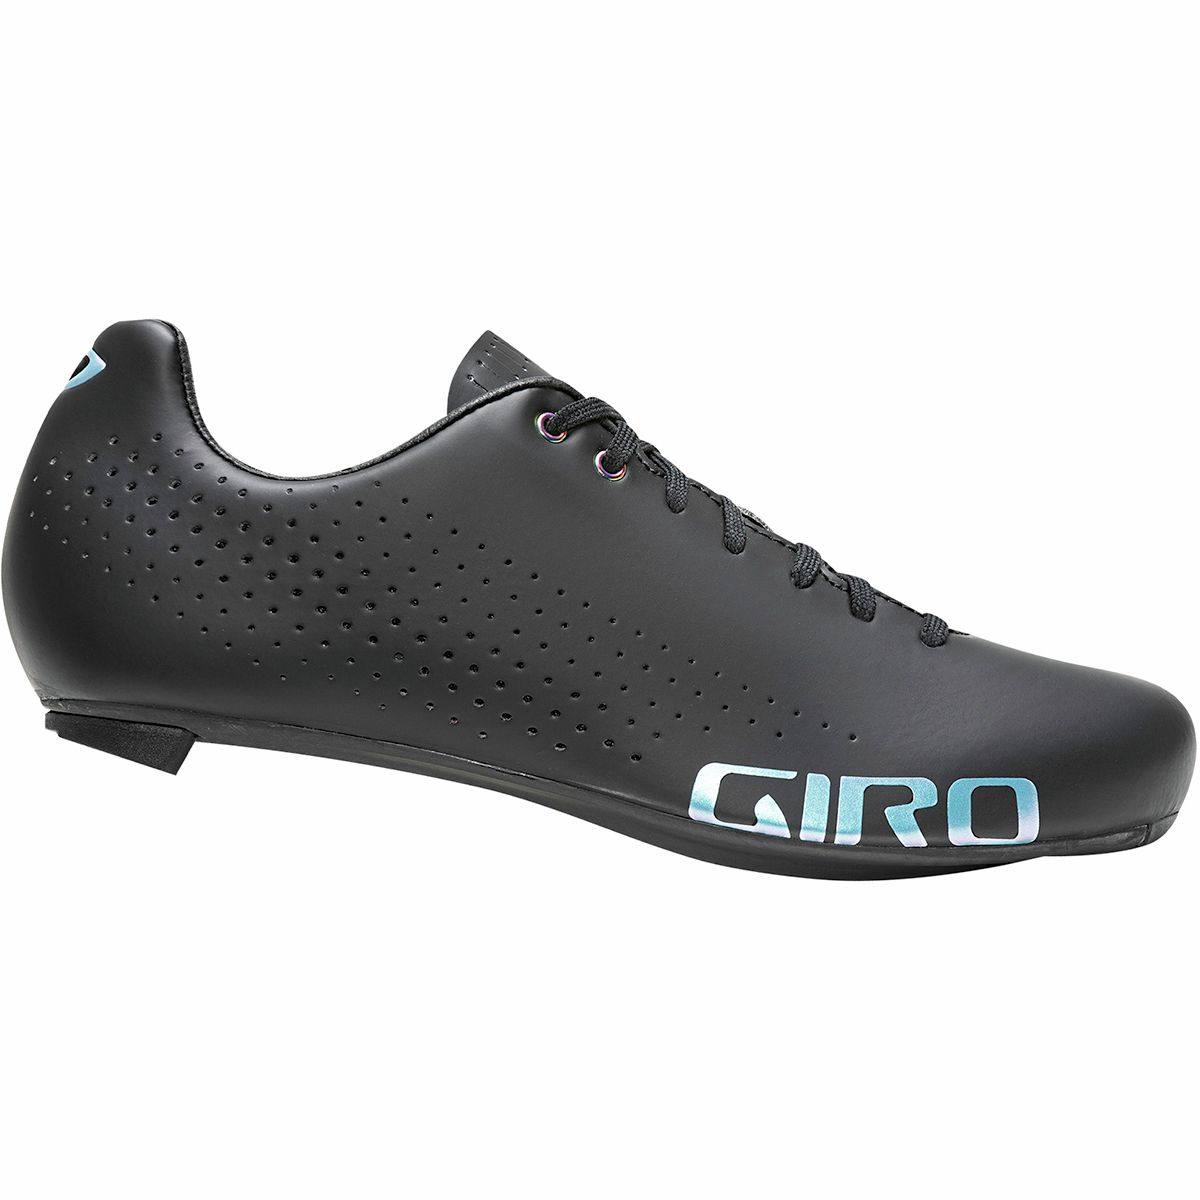 Giro Empire ACC Cycling Shoe - Women's Black, 41.5